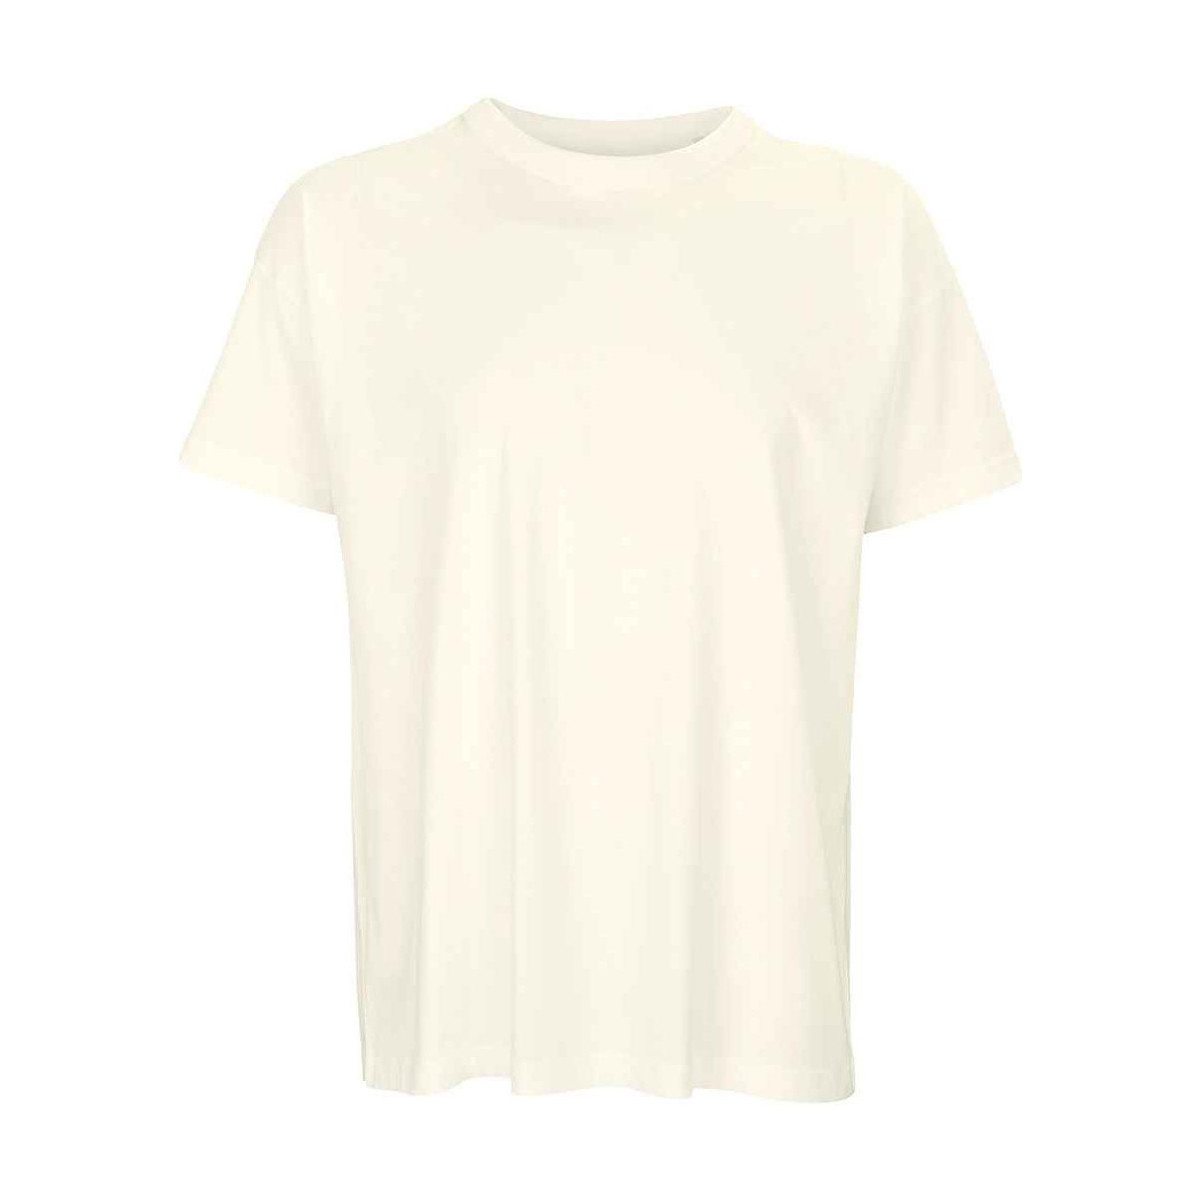 Vêtements Homme T-shirts manches longues Sols 3806 Blanc